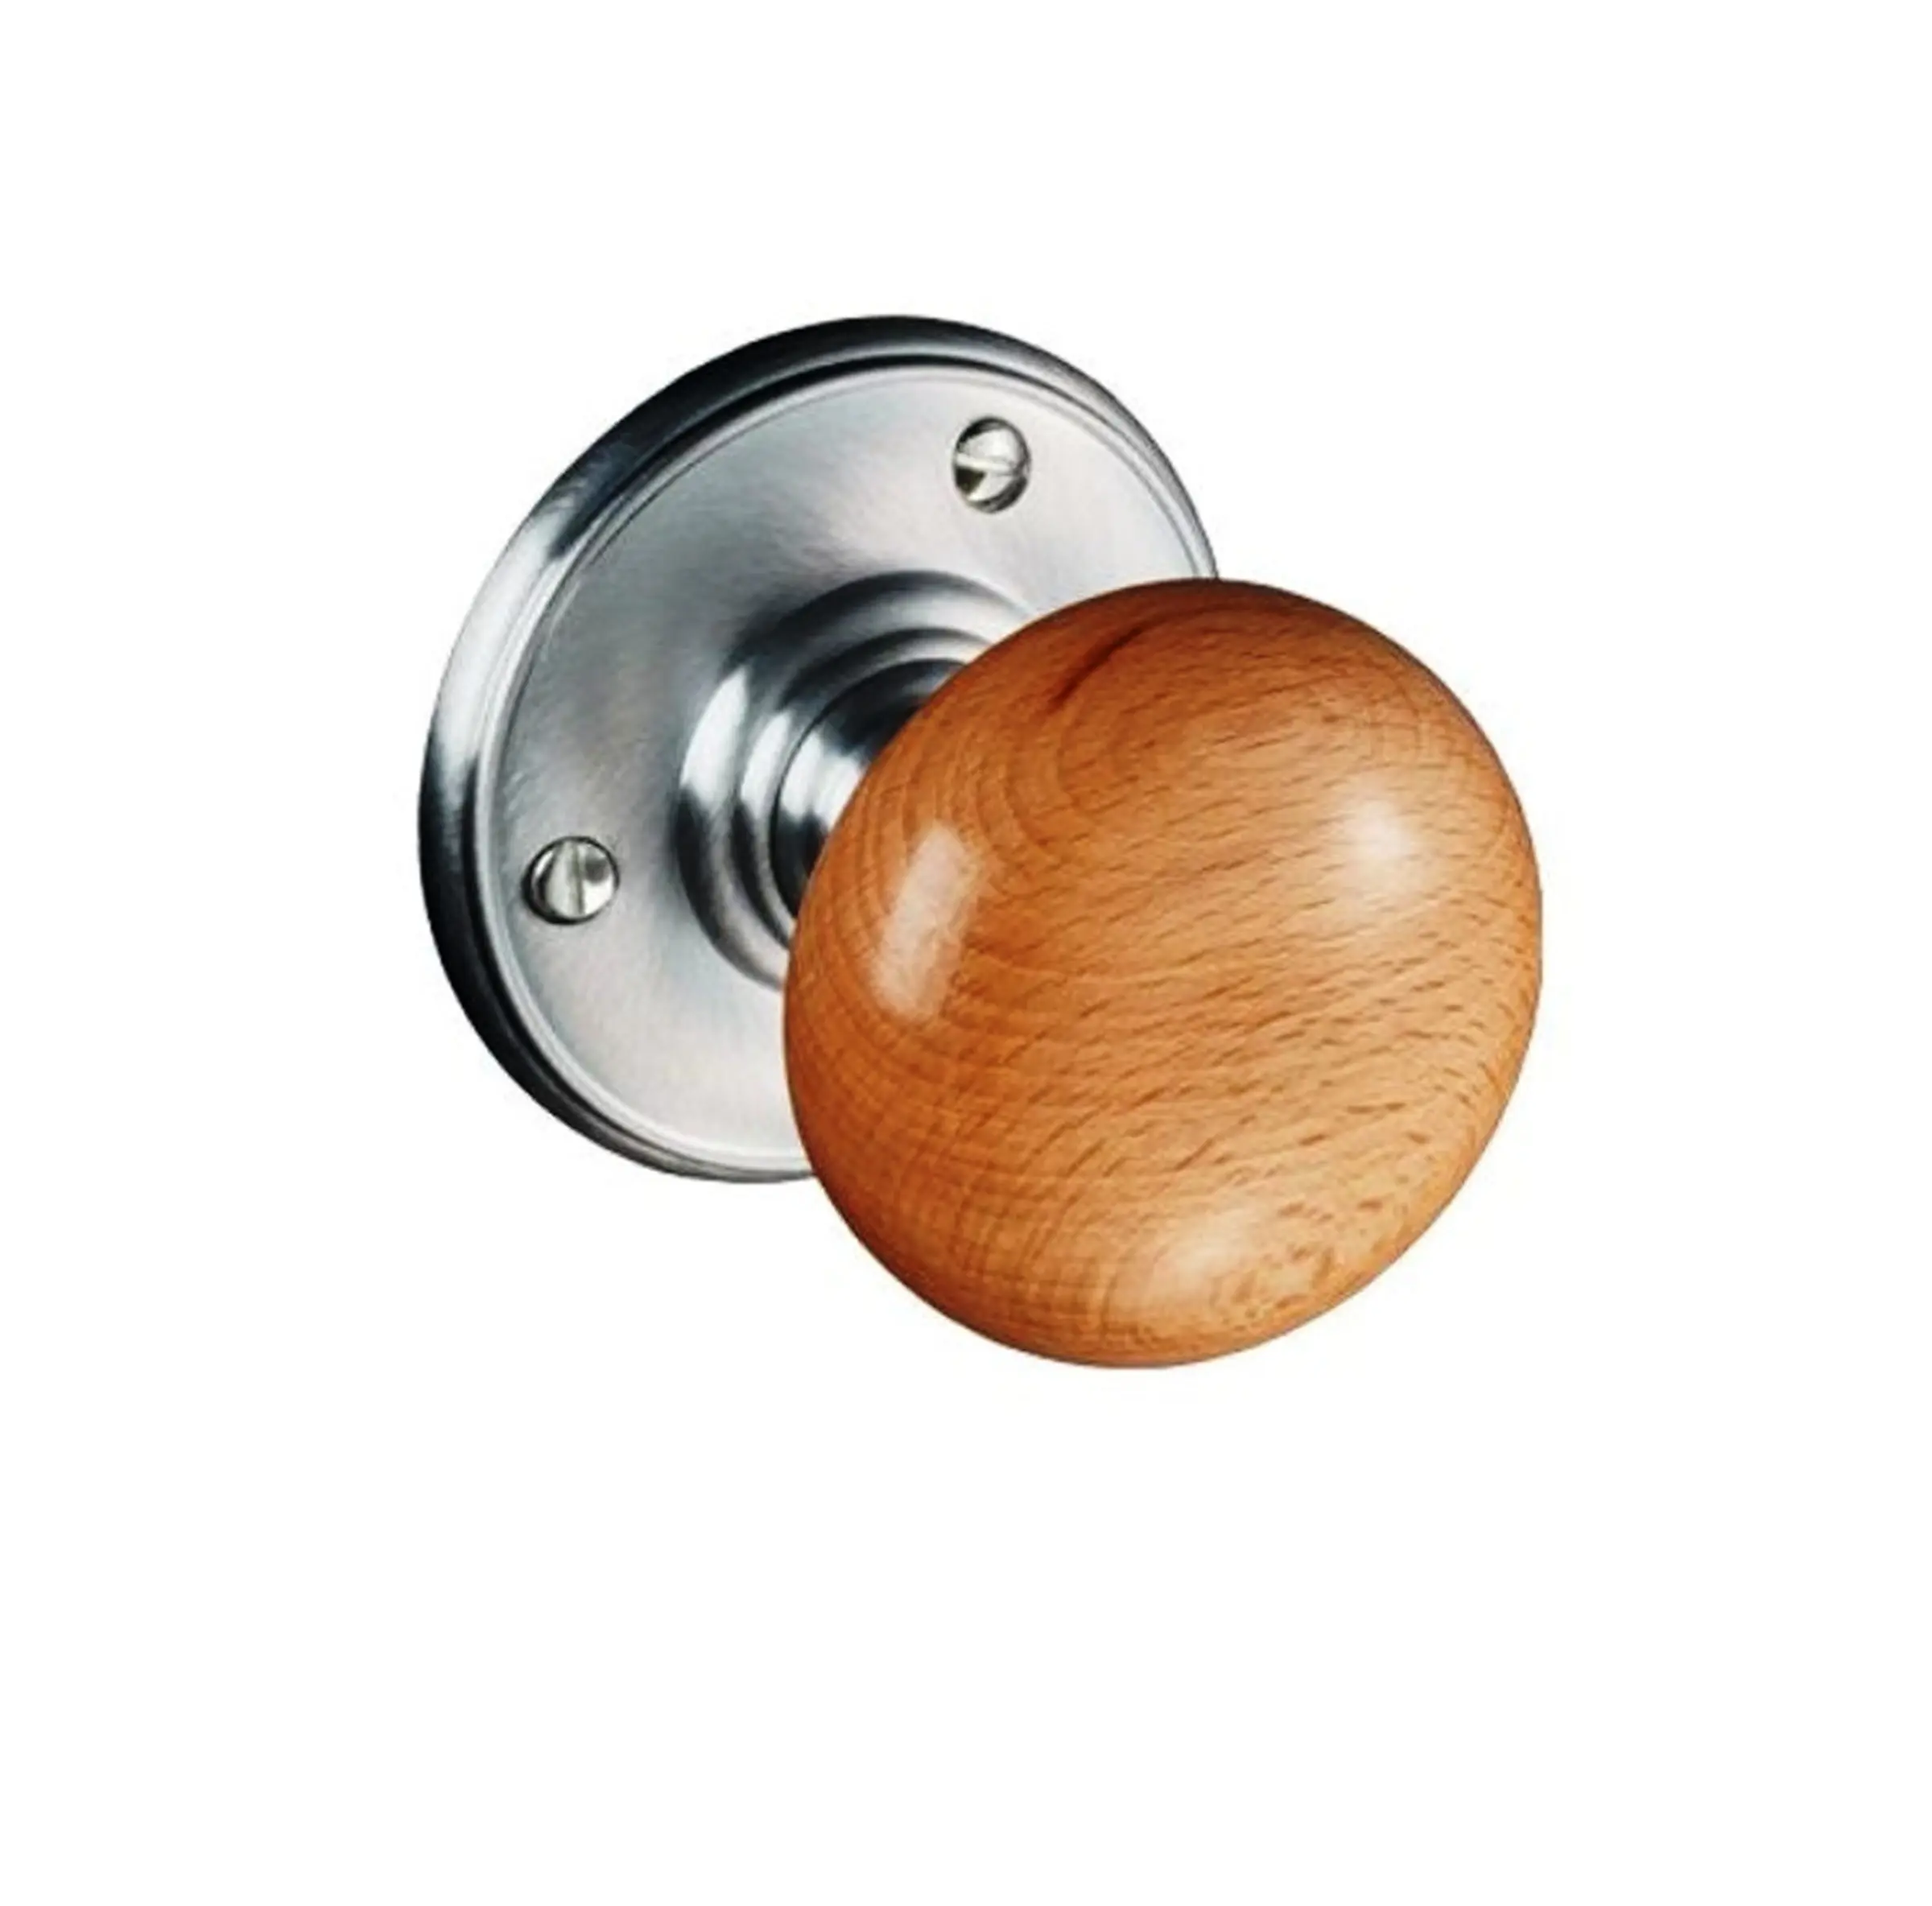 Buy Wood Circle Door Handles Online In India Luxury Wood Resin Metal Door Cabinet Knob Handle Made In India